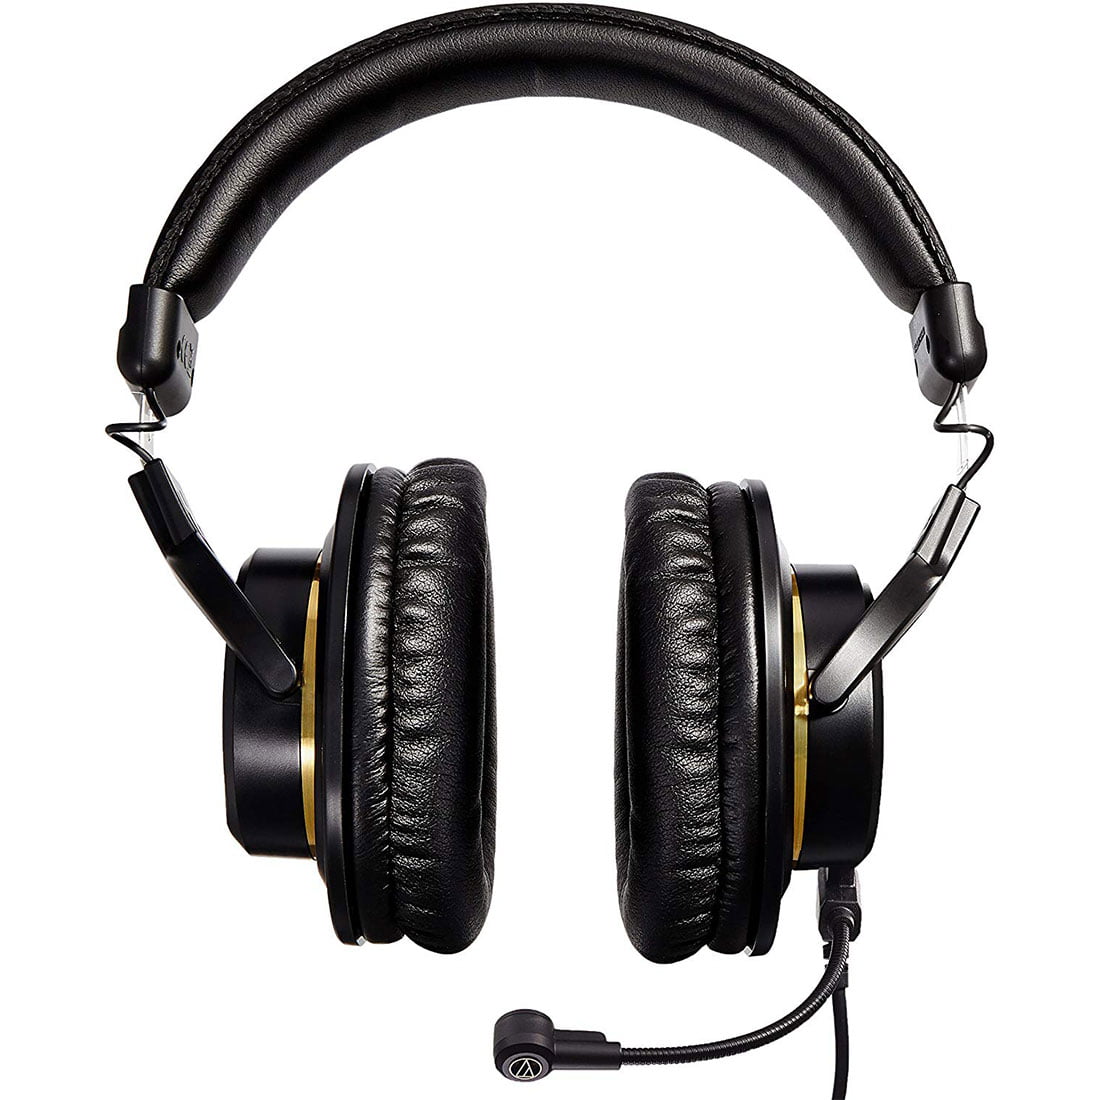 Over-the-Ear Headphones